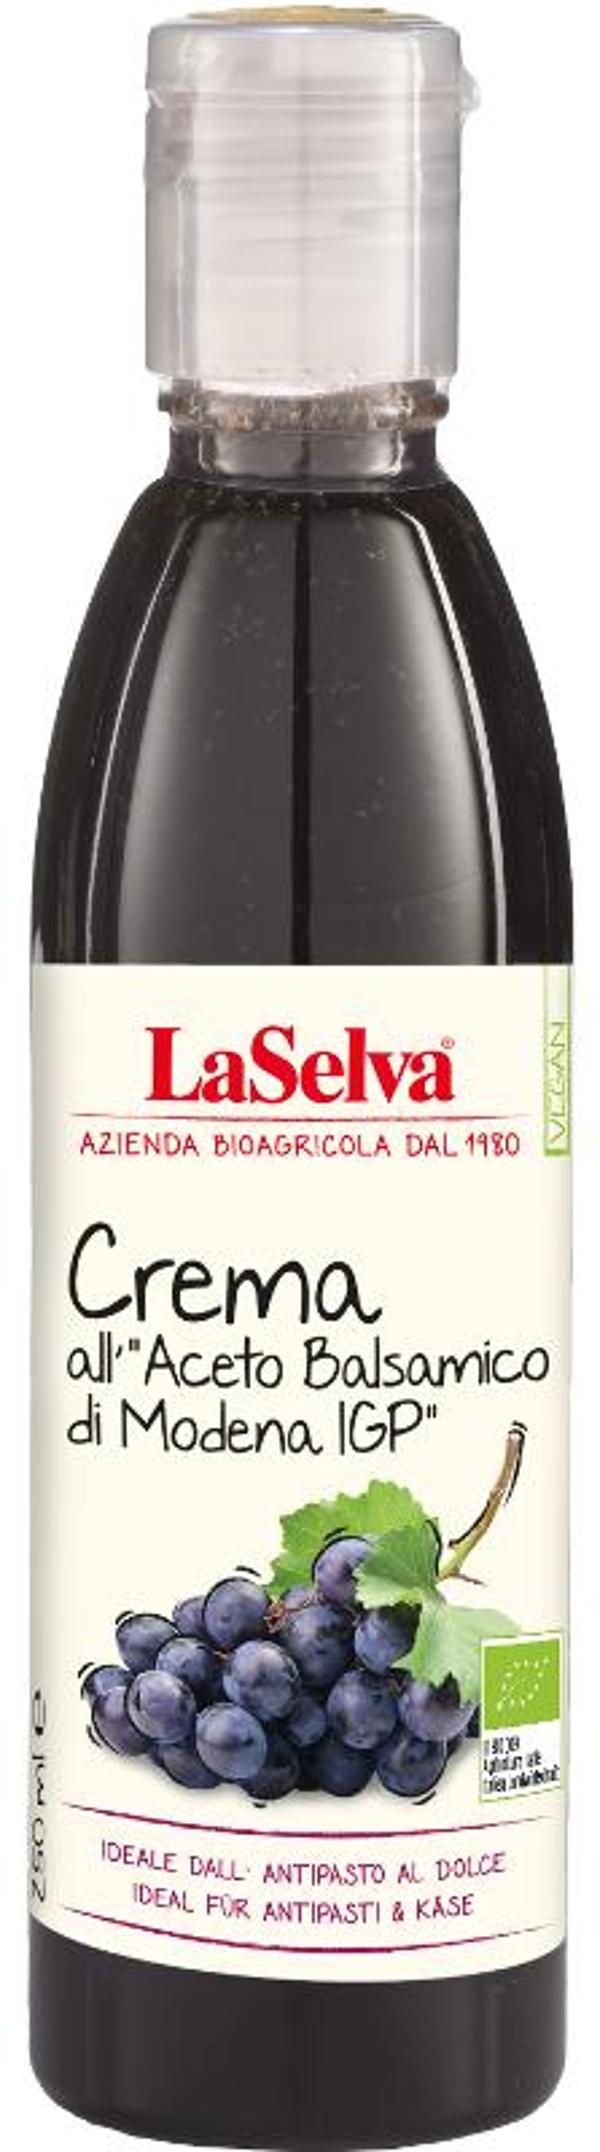 Produktfoto zu Crema con Aceto di Balsamico 250ml